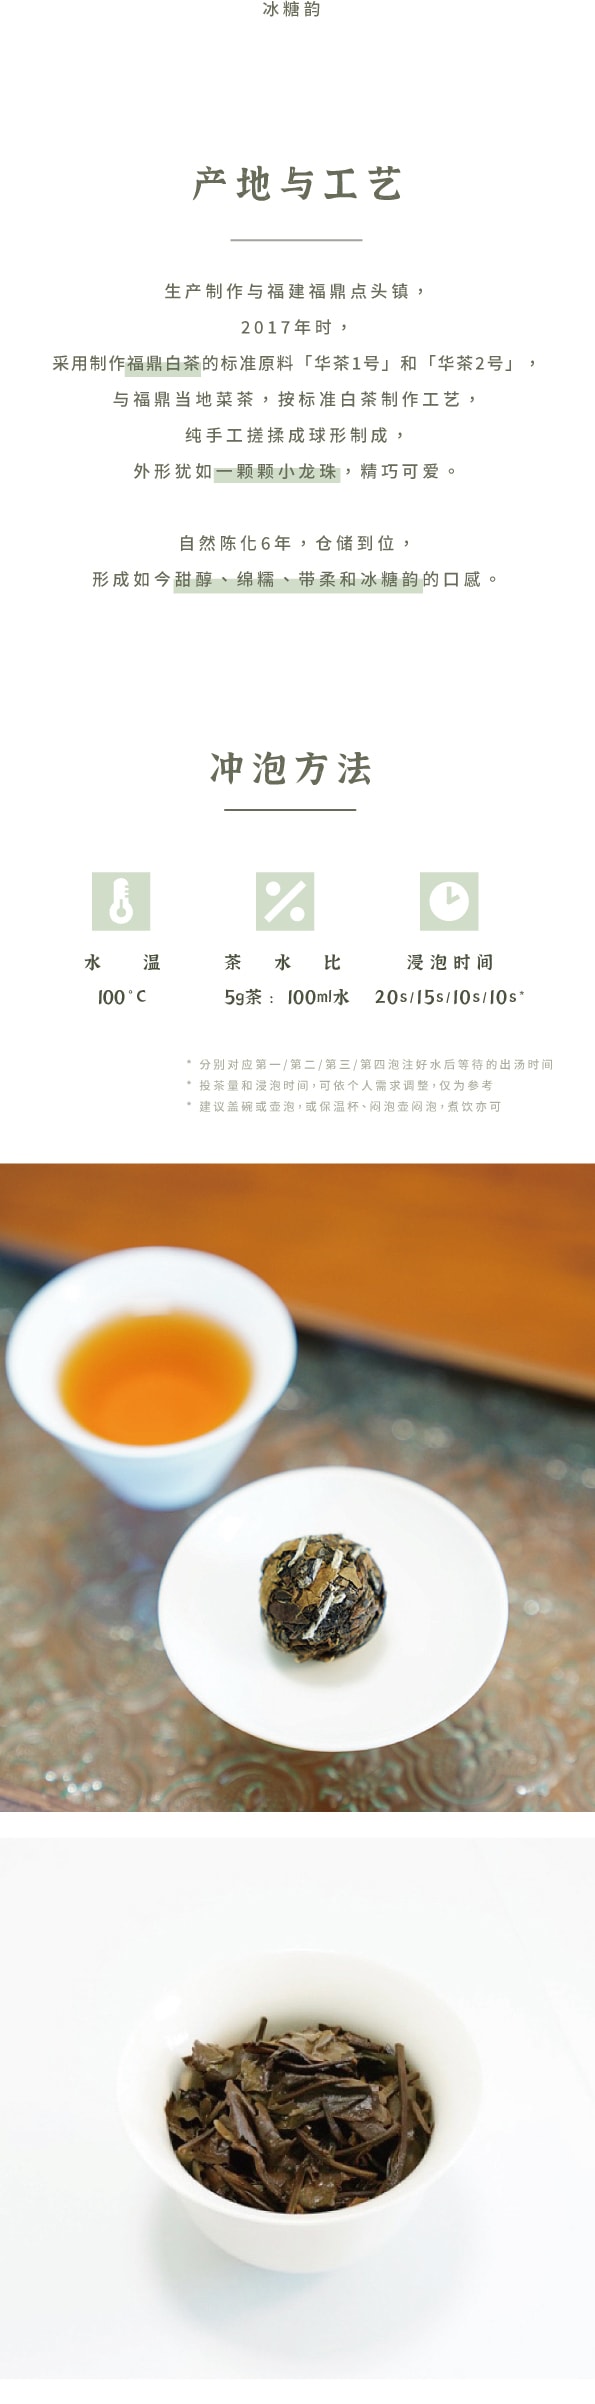 美國 趙趙的茶 ZhaoTea 貢眉龍珠三連泡 老白茶 福建福鼎 香糯甜醇 一顆一泡 15g(5gx3)